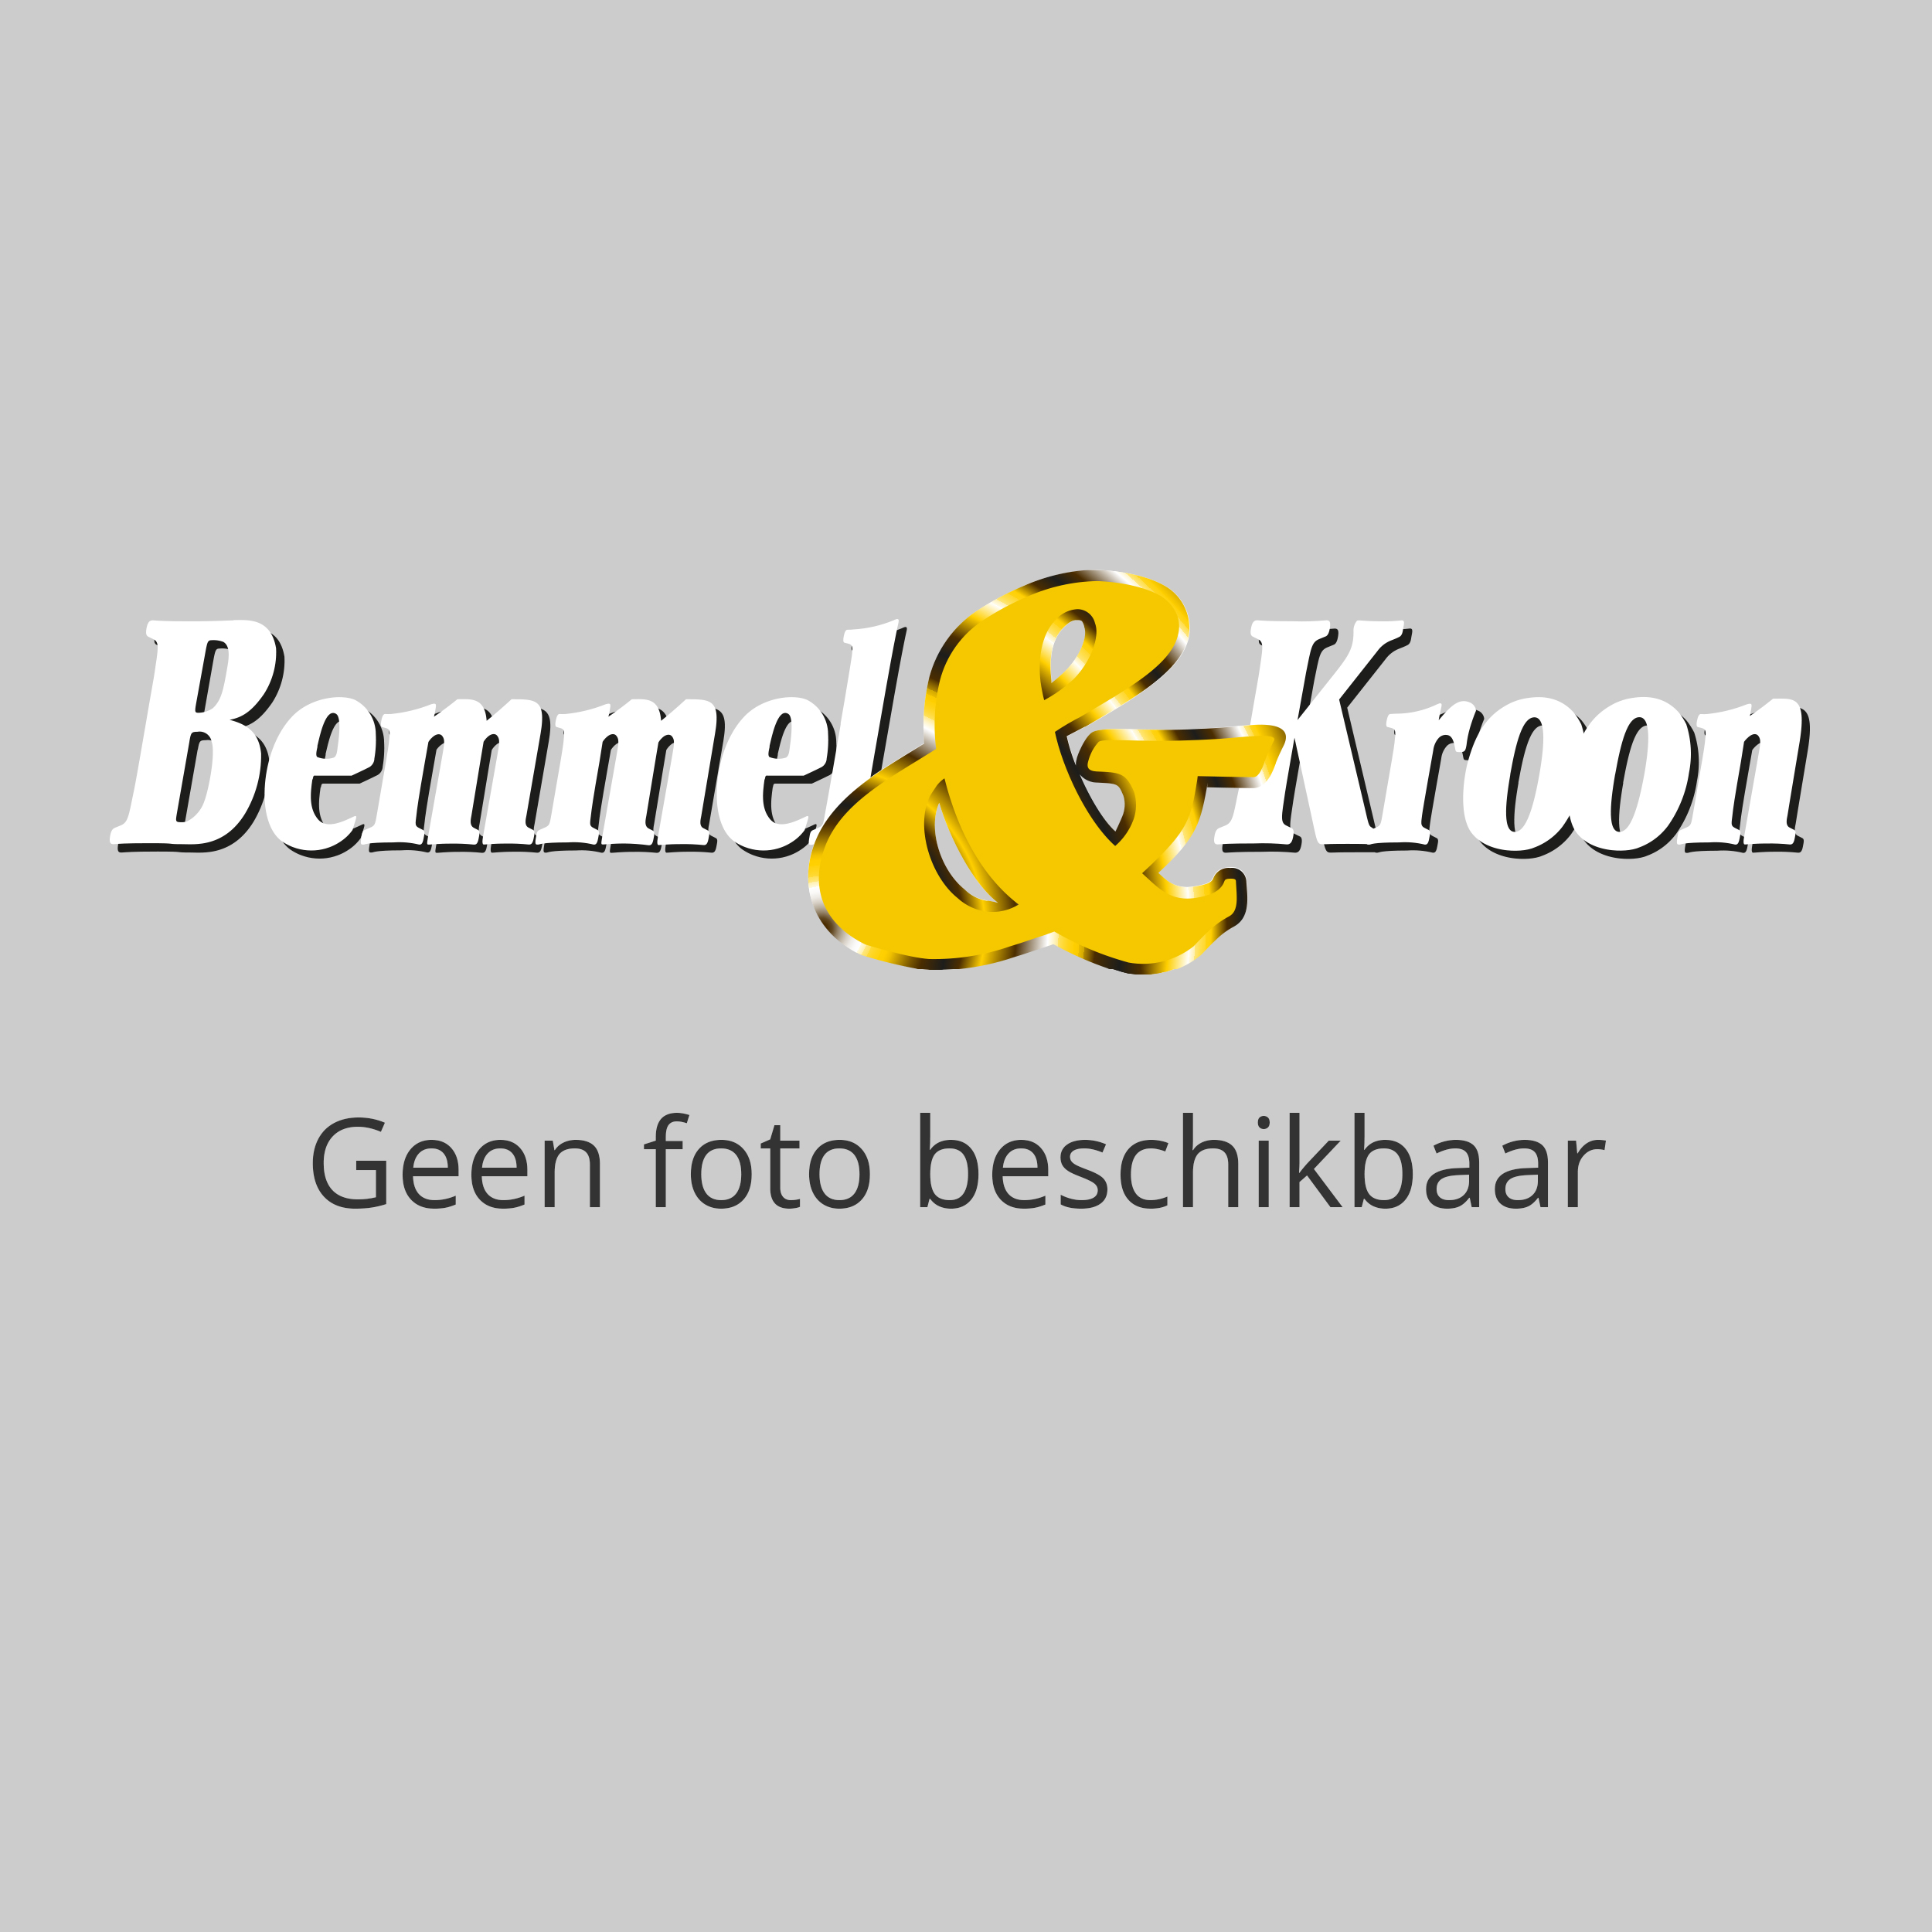 Potentieel Betrokken ik heb het gevonden Siemens LC90BA530 - Laagste prijs | Bemmel & Kroon